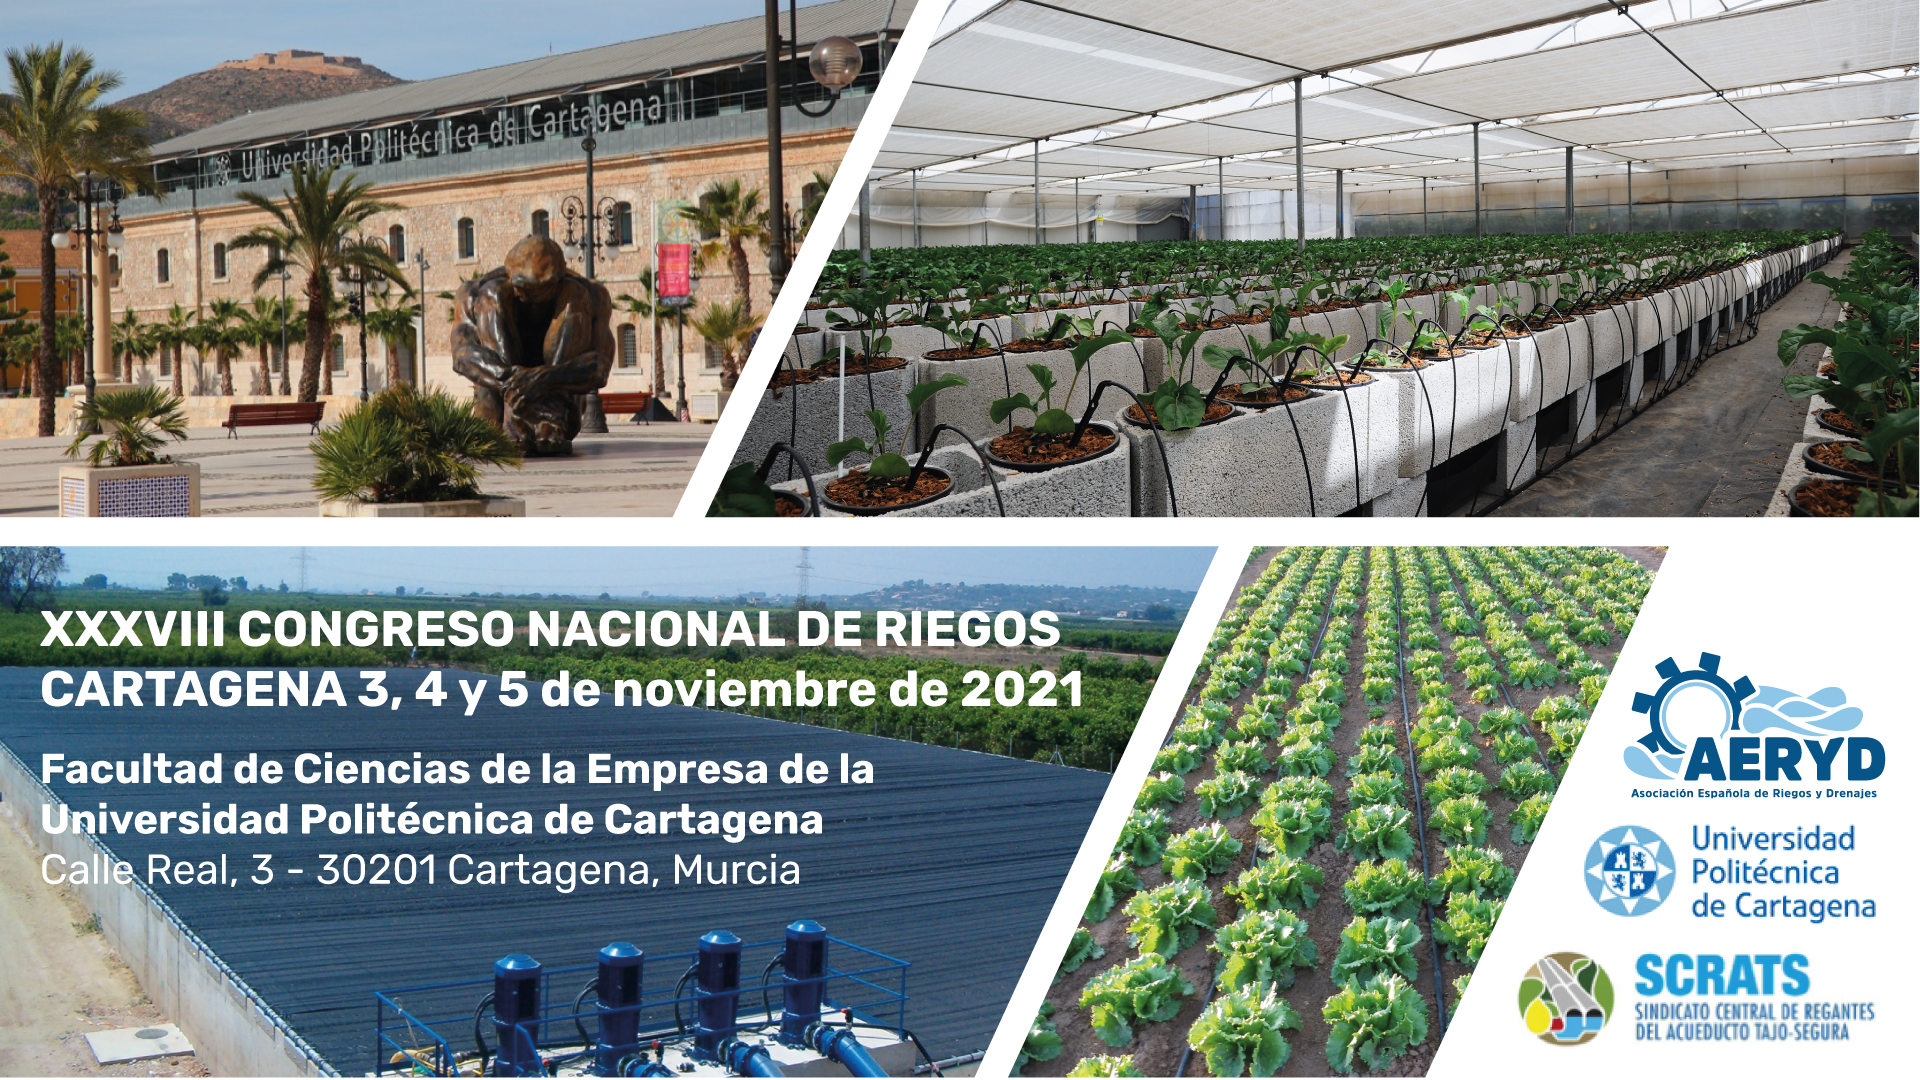 Último congreso: XXXVIII Congreso Nacional de riegos Cartagena 2021